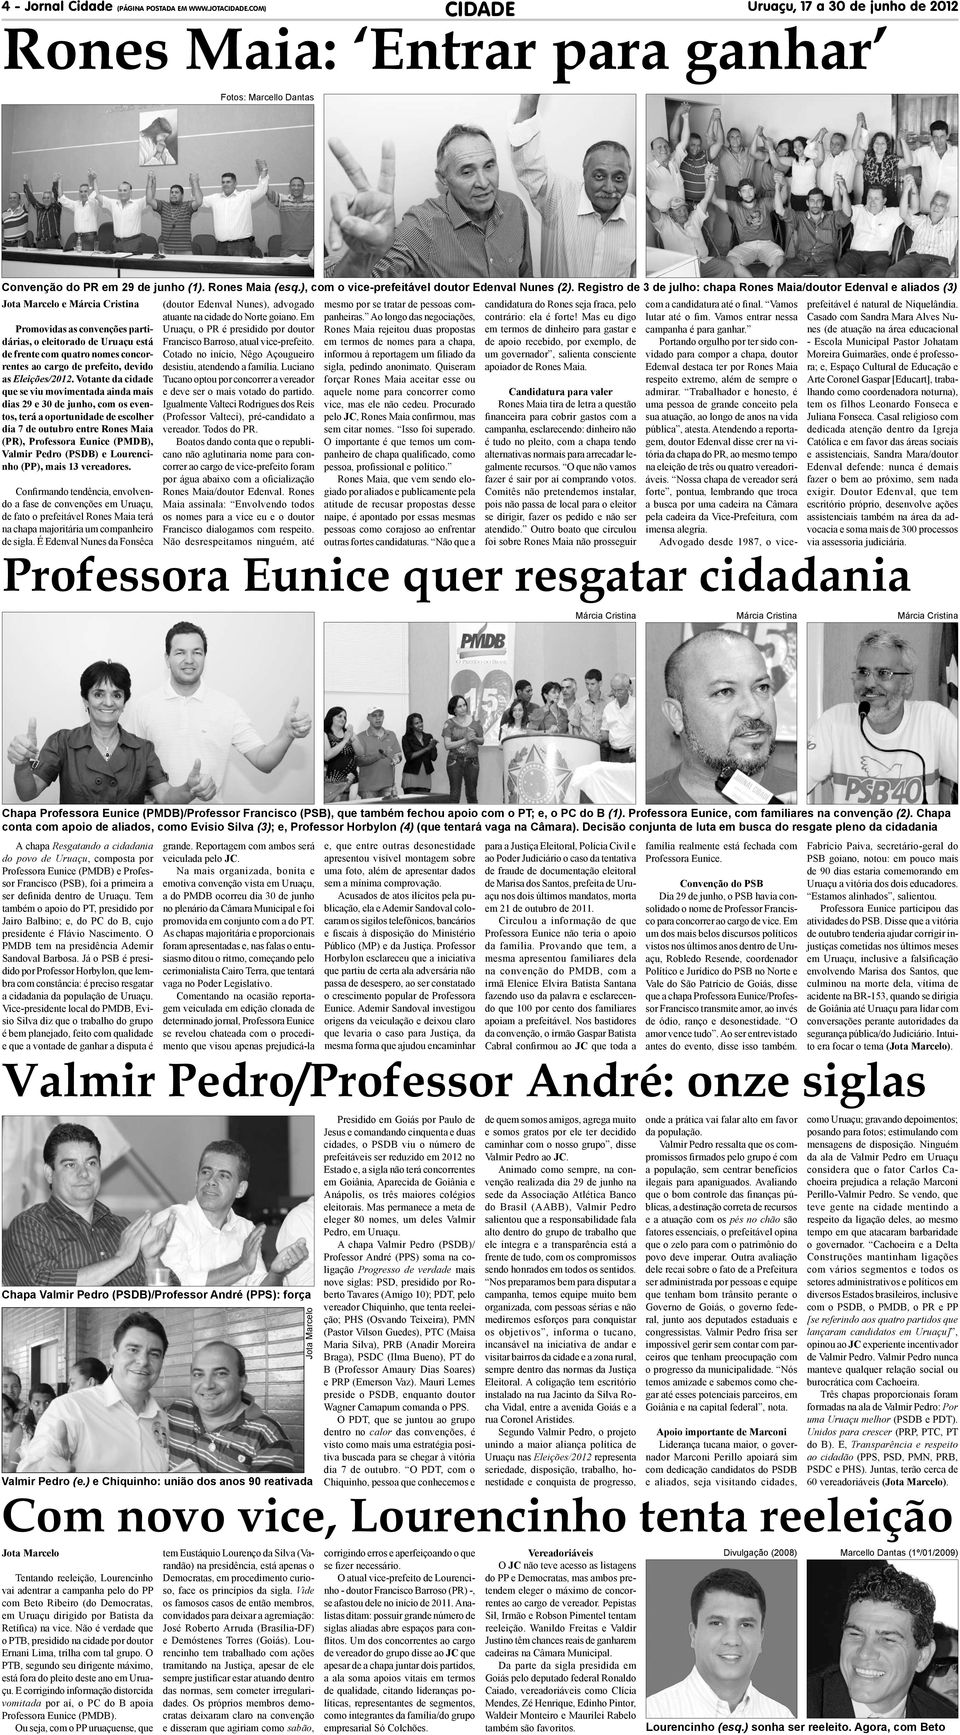 Registro de 3 de julho: chapa Rones Maia/doutor Edenval e aliados (3) e Promovidas as convenções partidárias, o eleitorado de Uruaçu está de frente com quatro nomes concorrentes ao cargo de prefeito,